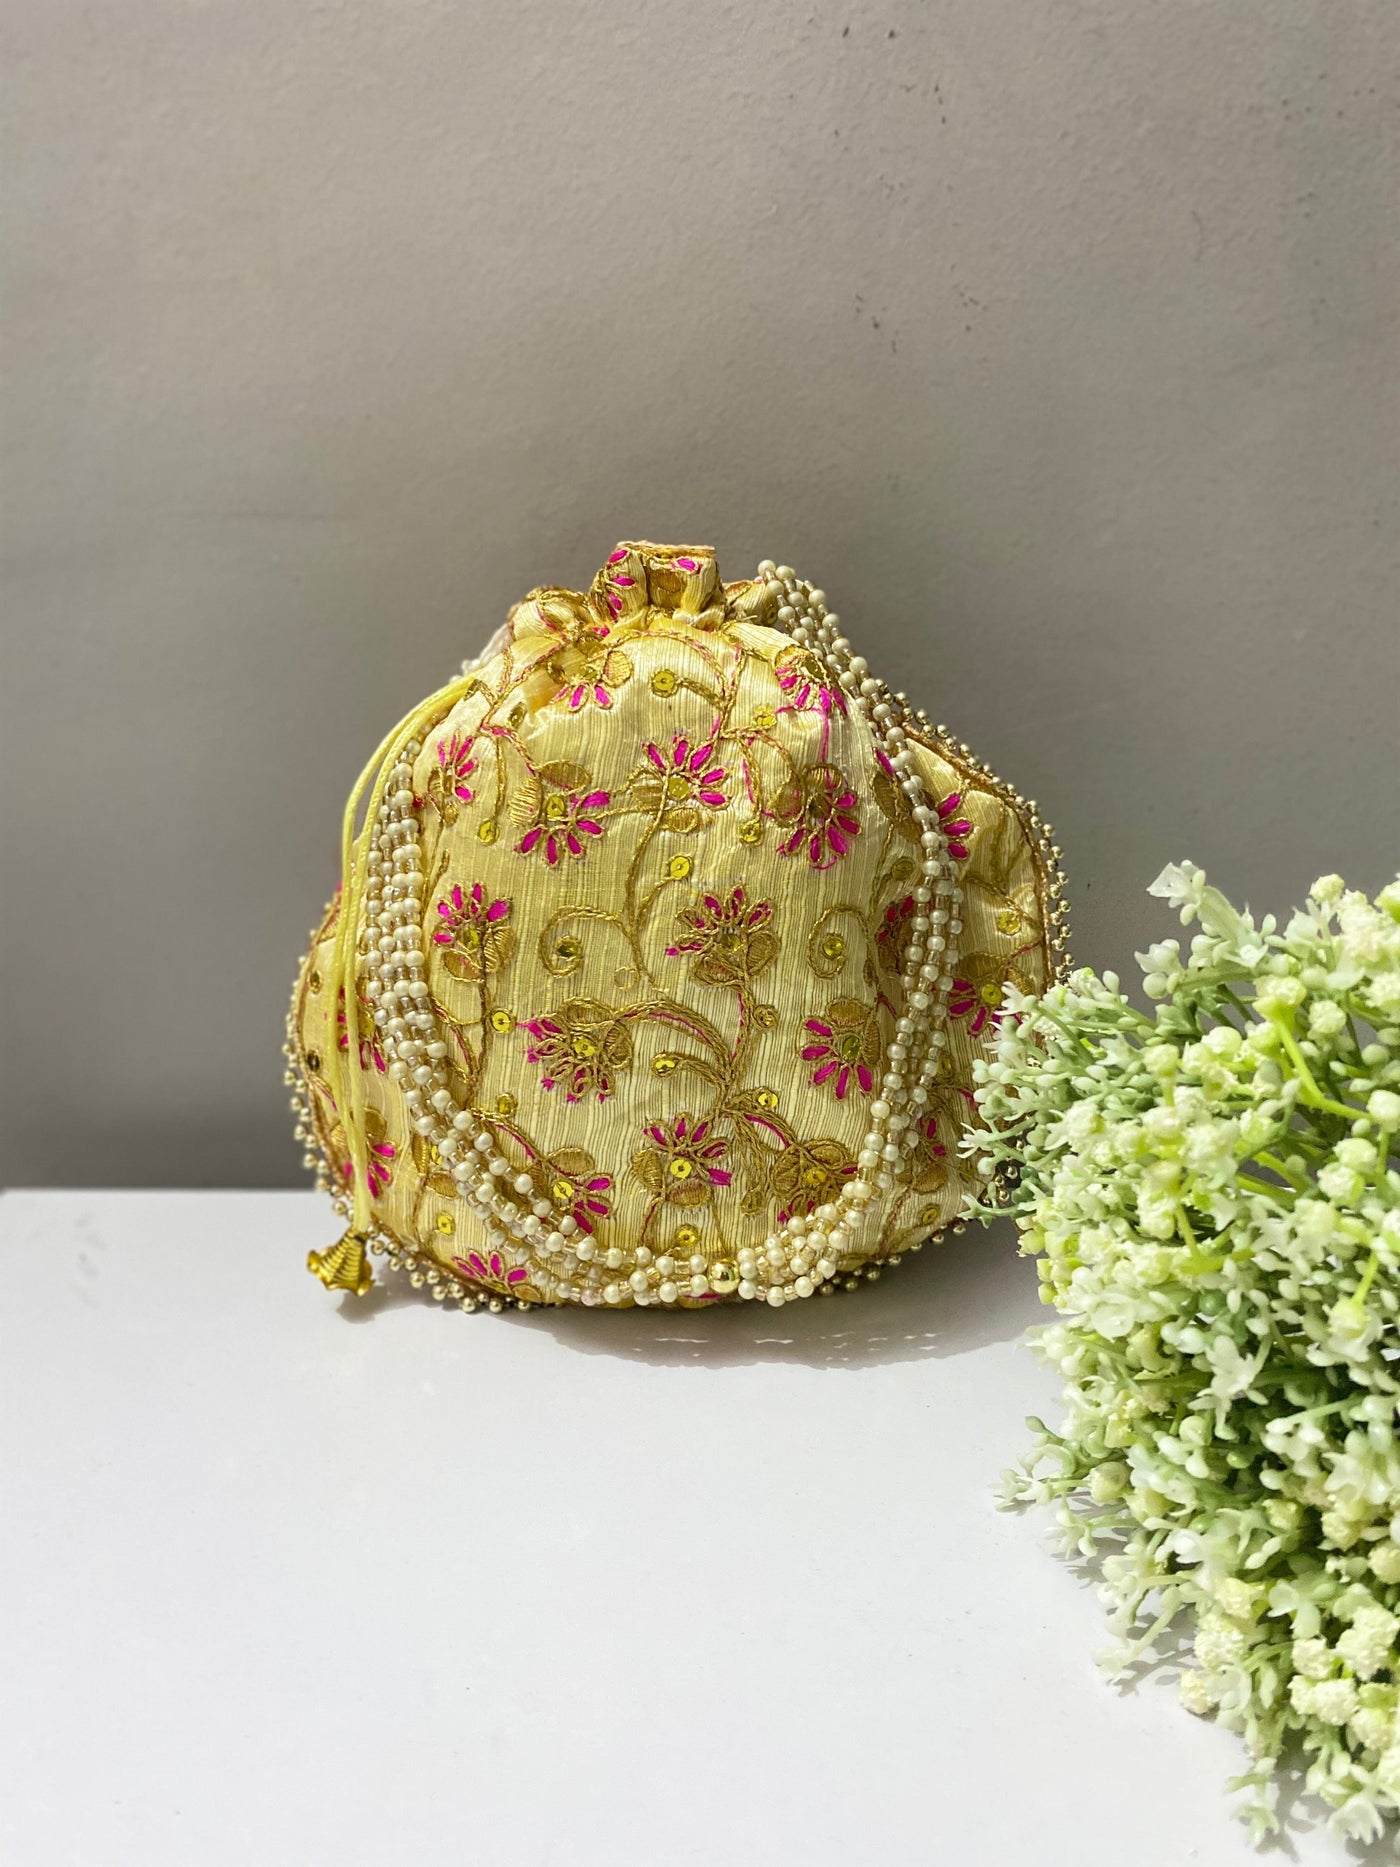 LAMANSH ® Women's Potli Bag LAMANSH® Golden Sequin Ethnic Potli Bag Handbag